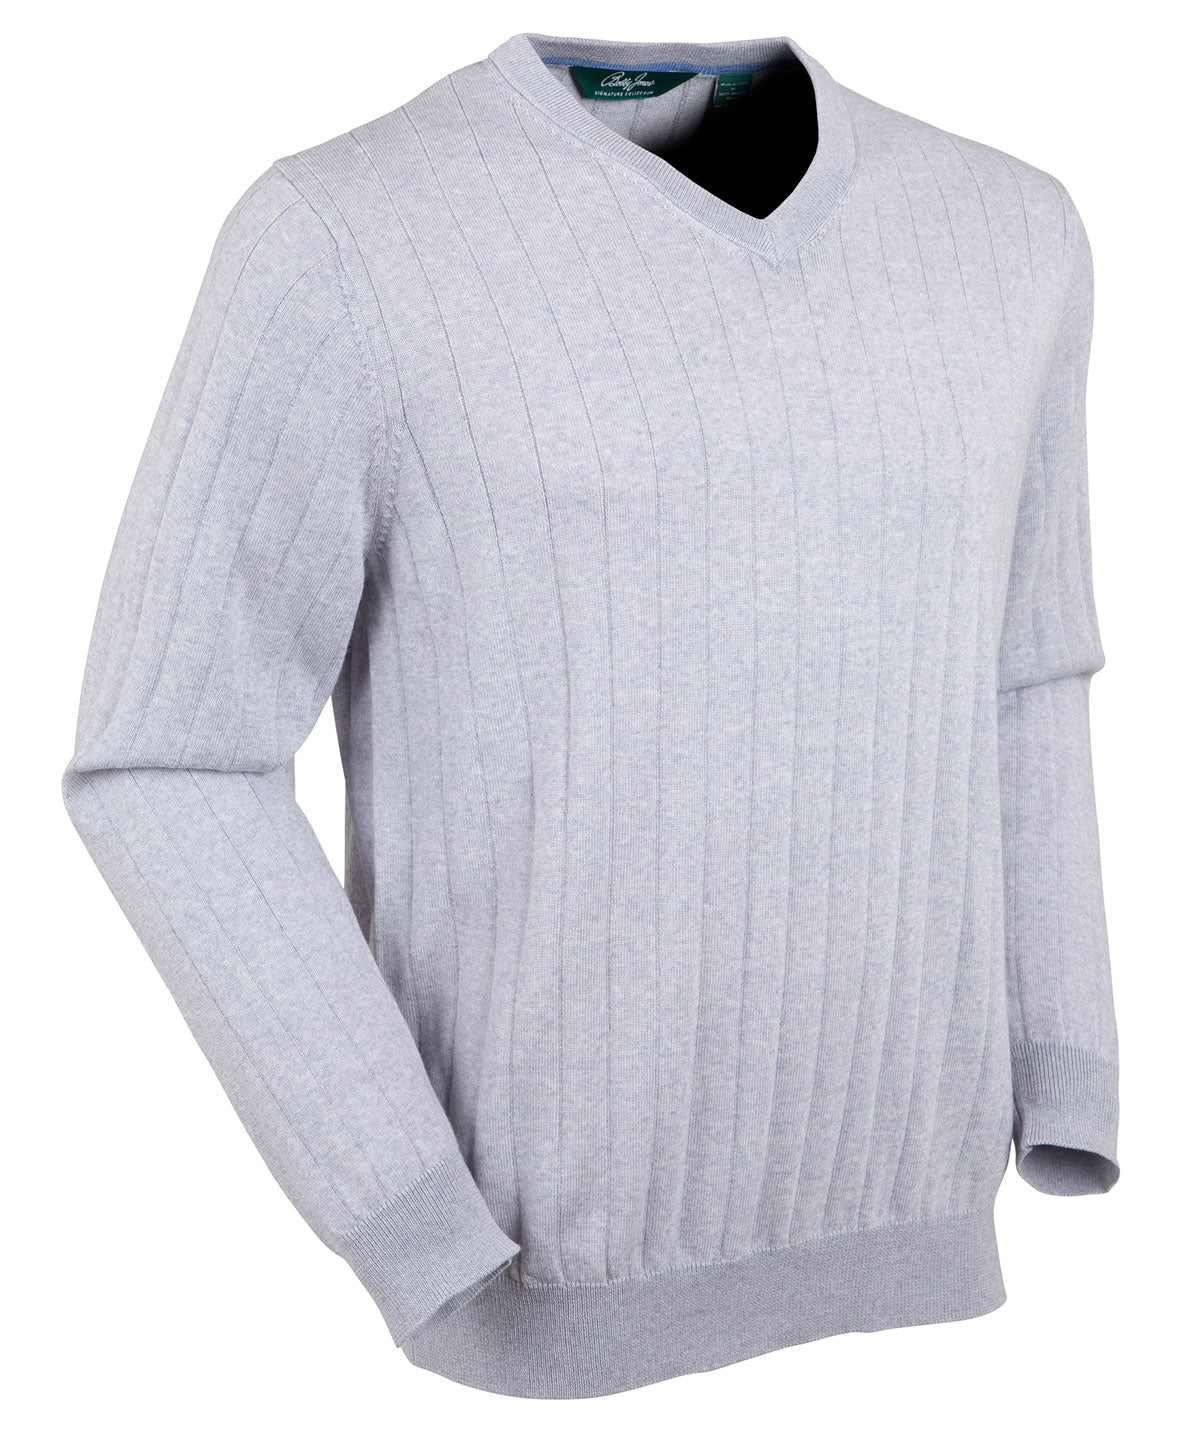 Signature Merino V-neck Pullover Sweater